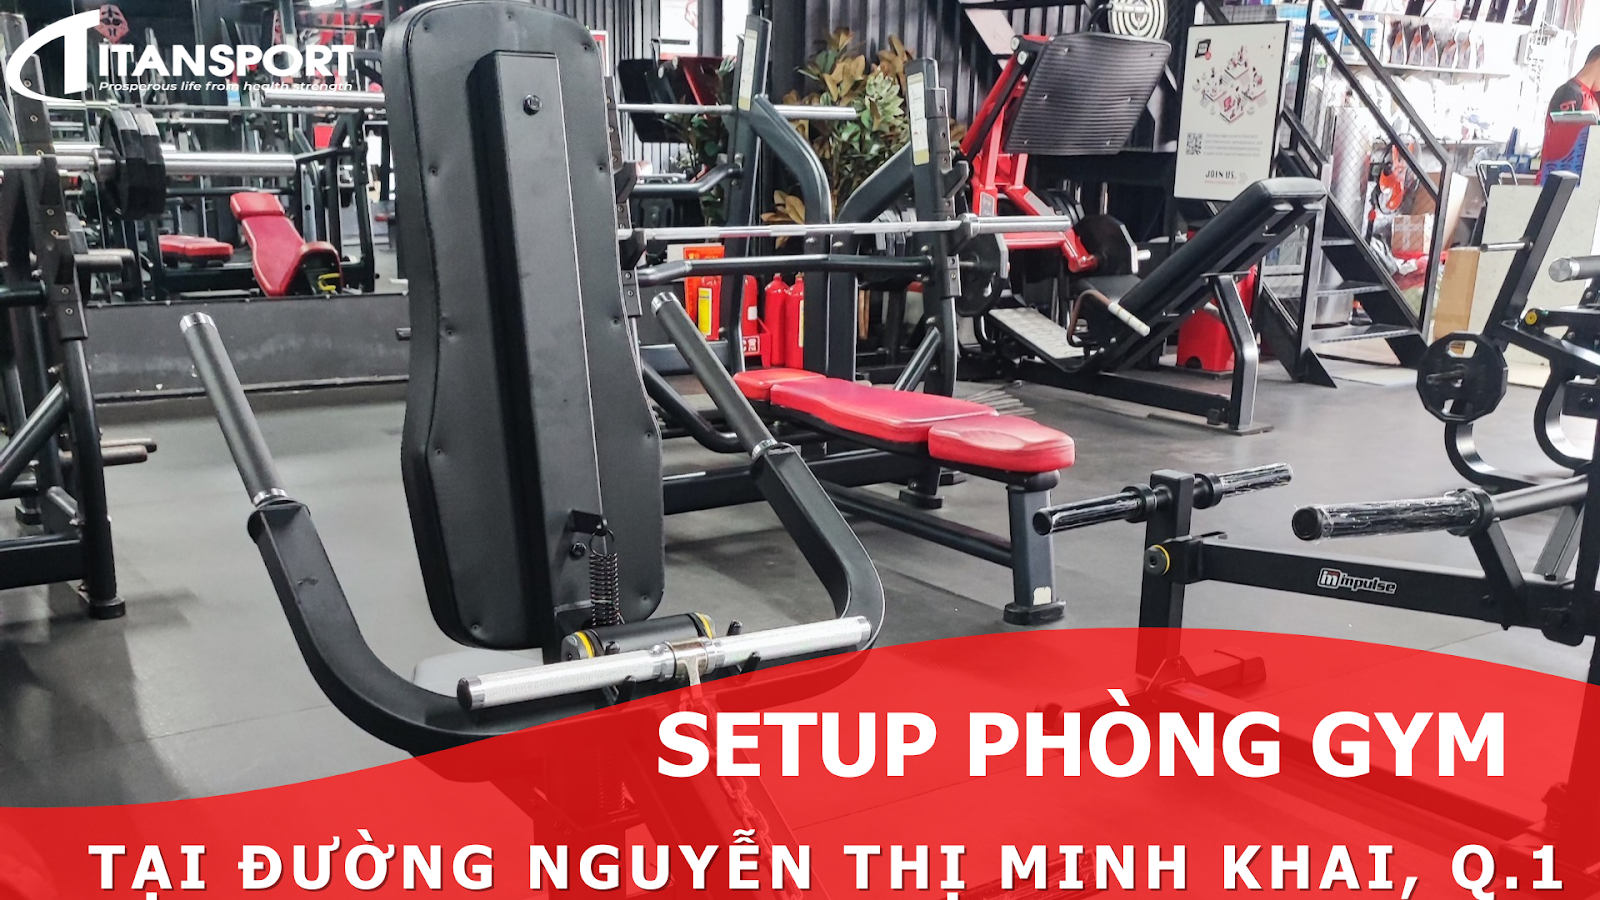 Báo giá setup phòng gym Quận 1 trọn gói, Dự án đã thực hiện tại đường Nguyễn Thị Minh Khai, Quận 1, Tp. Hồ Chí Minh